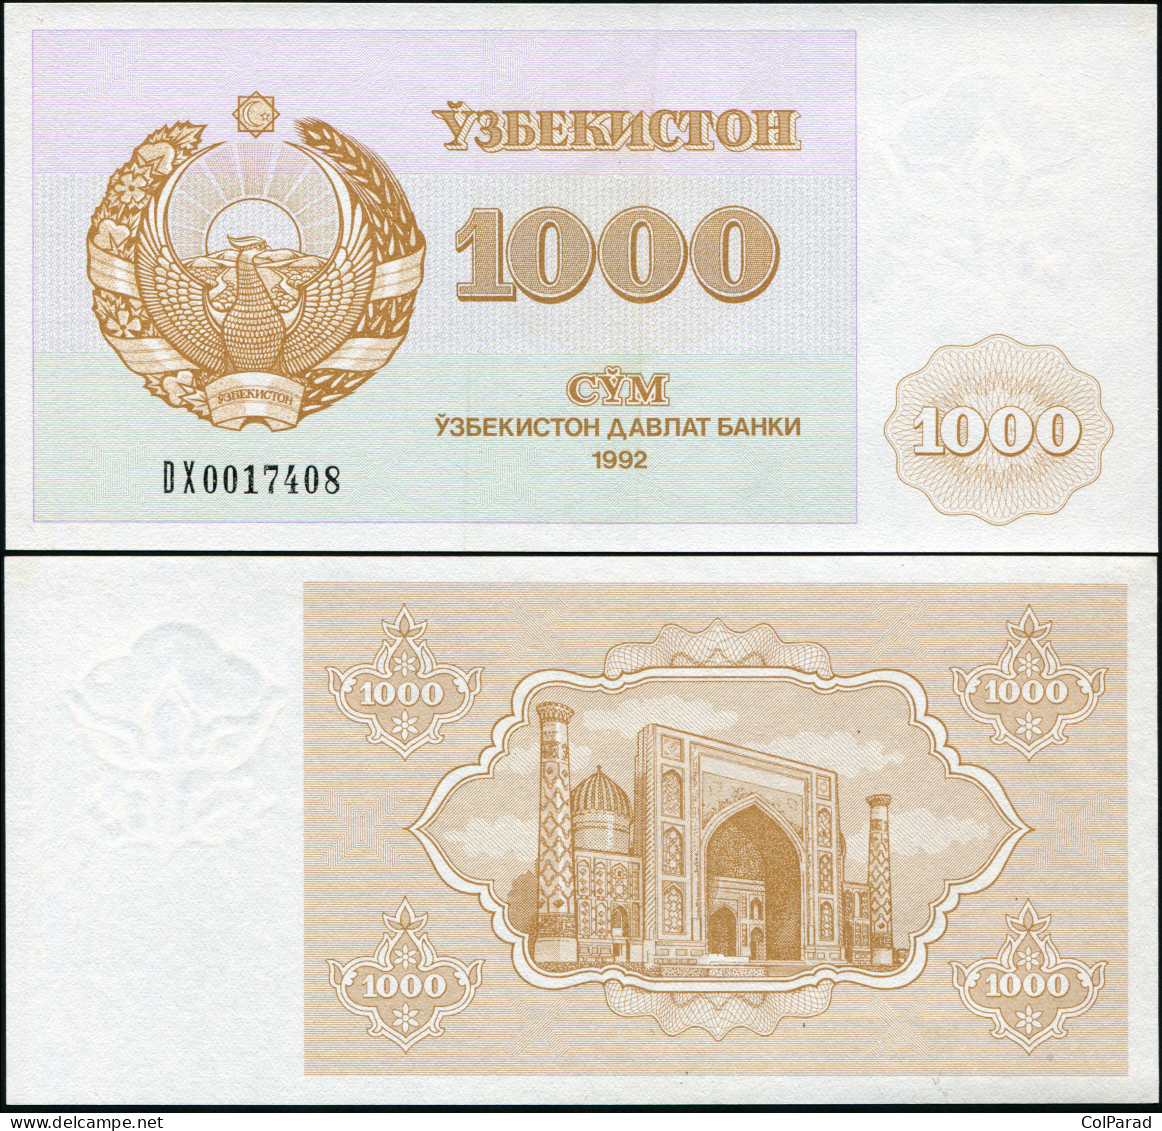 UZBEKISTAN 1000 SOM - 1992 (1993) - Paper Unc - P.70a Banknote - Usbekistan